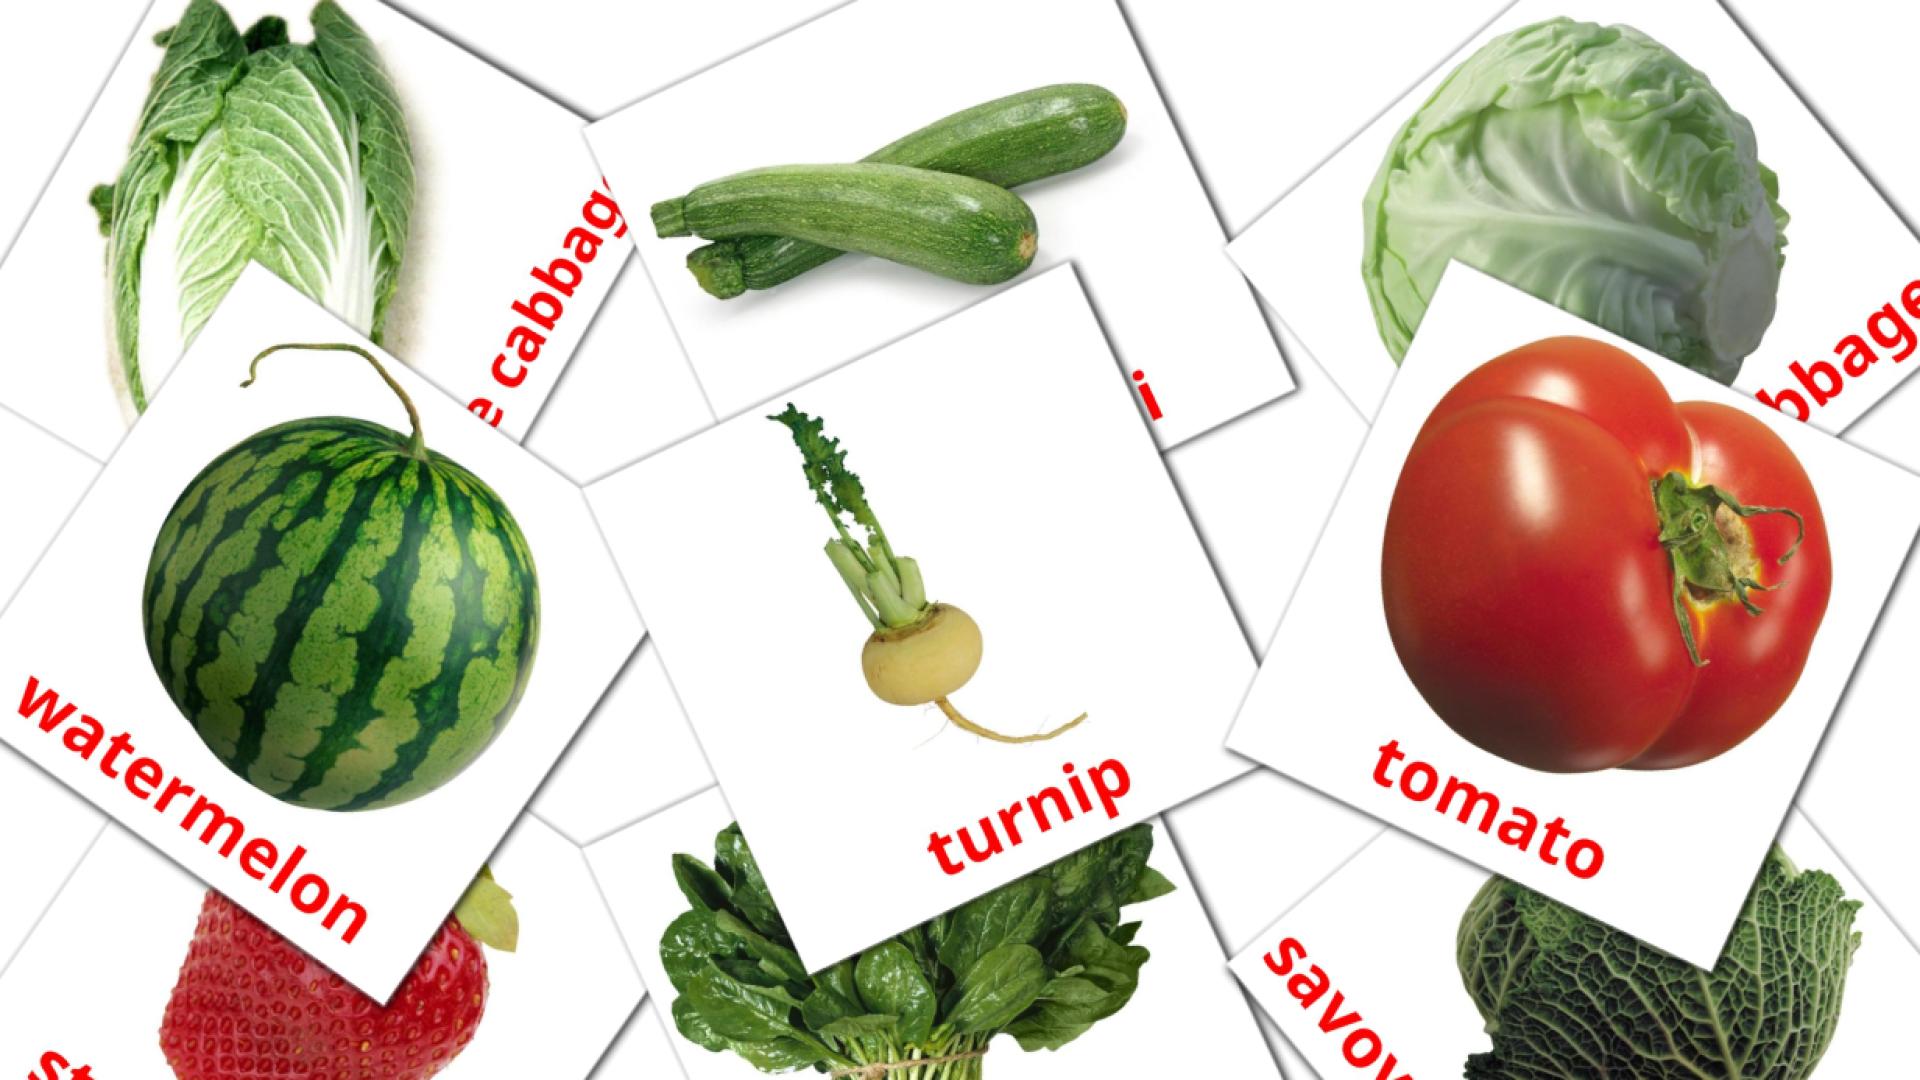 Food english vocabulary flashcards